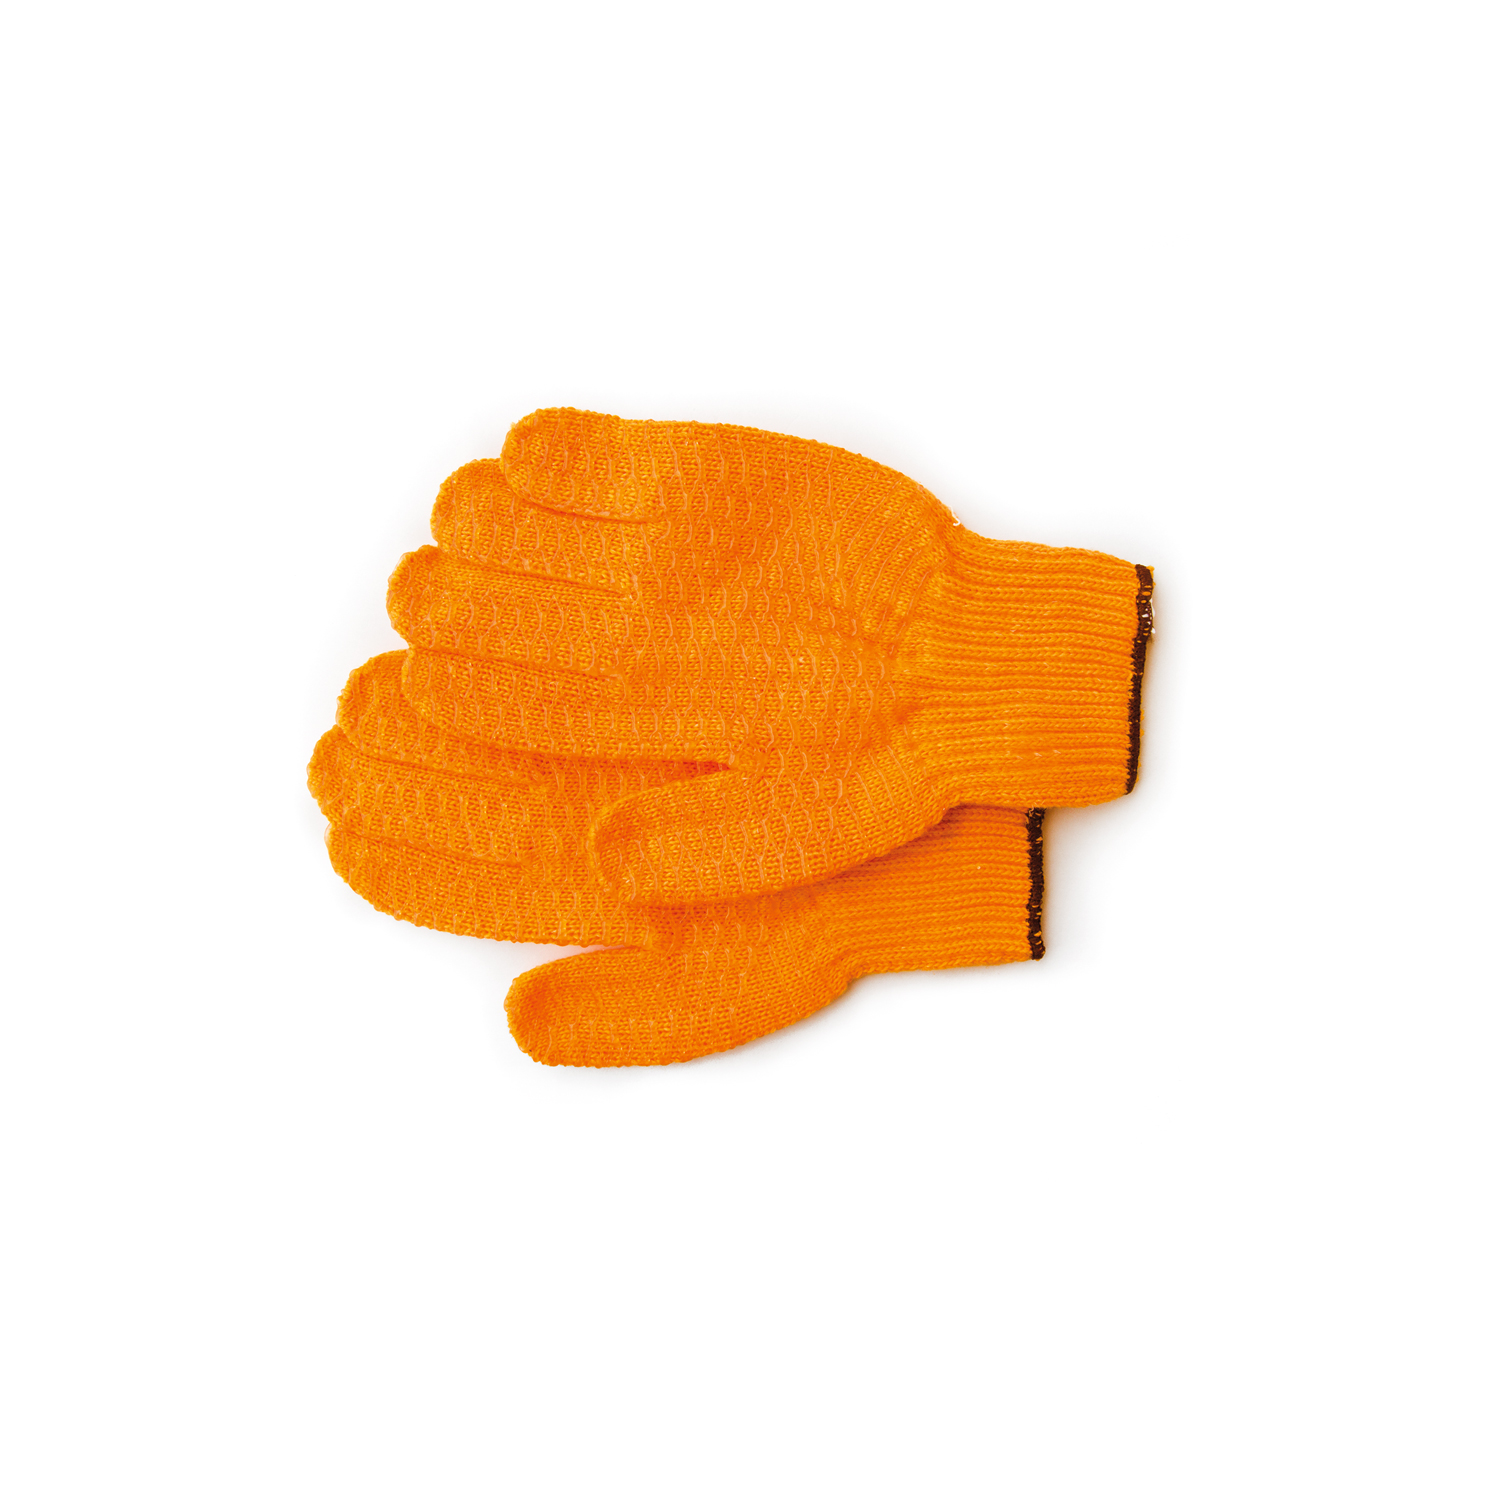 Keiler Fit Orange Forsthandschuh, Keiler, Handschuhe